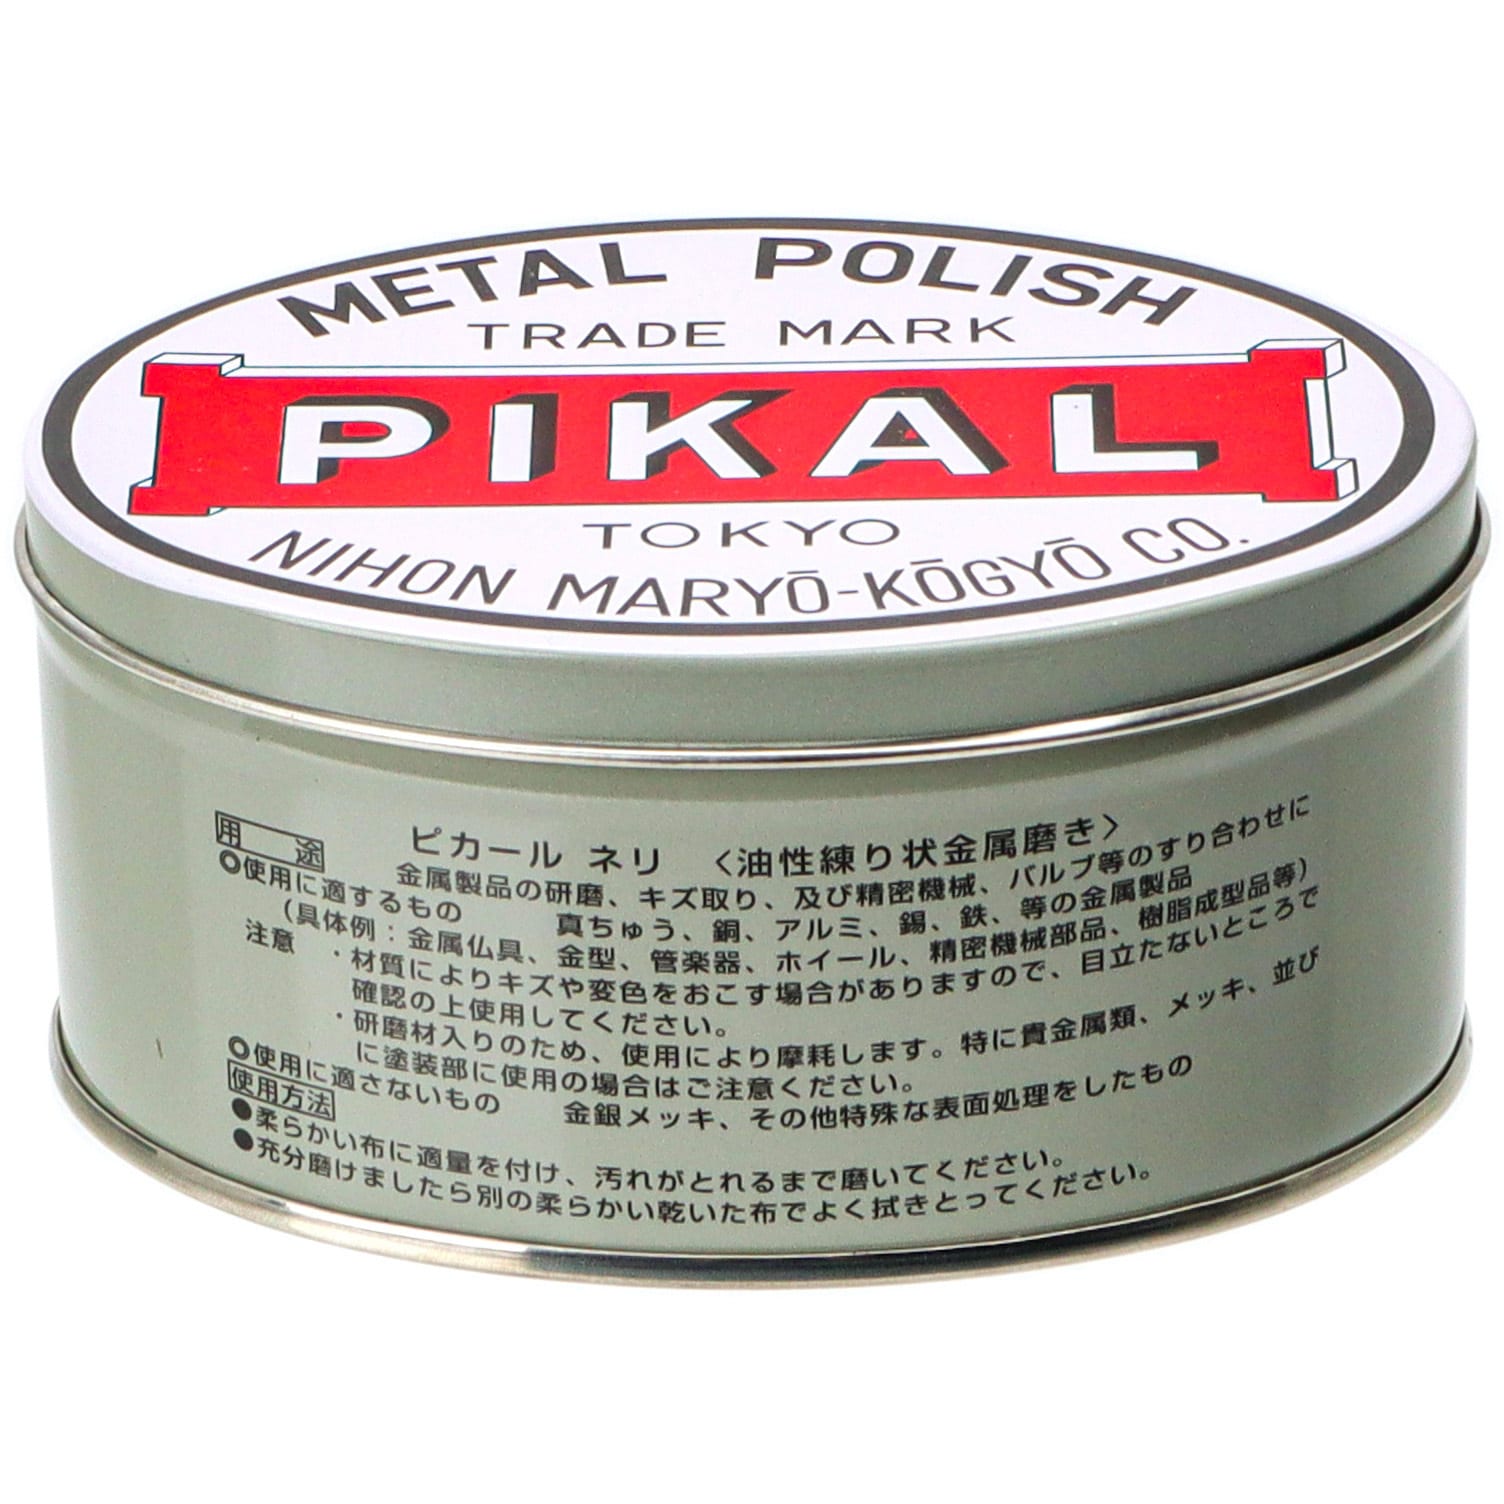 ピカールネリ 1缶 250g 日本磨料工業 通販サイトmonotaro